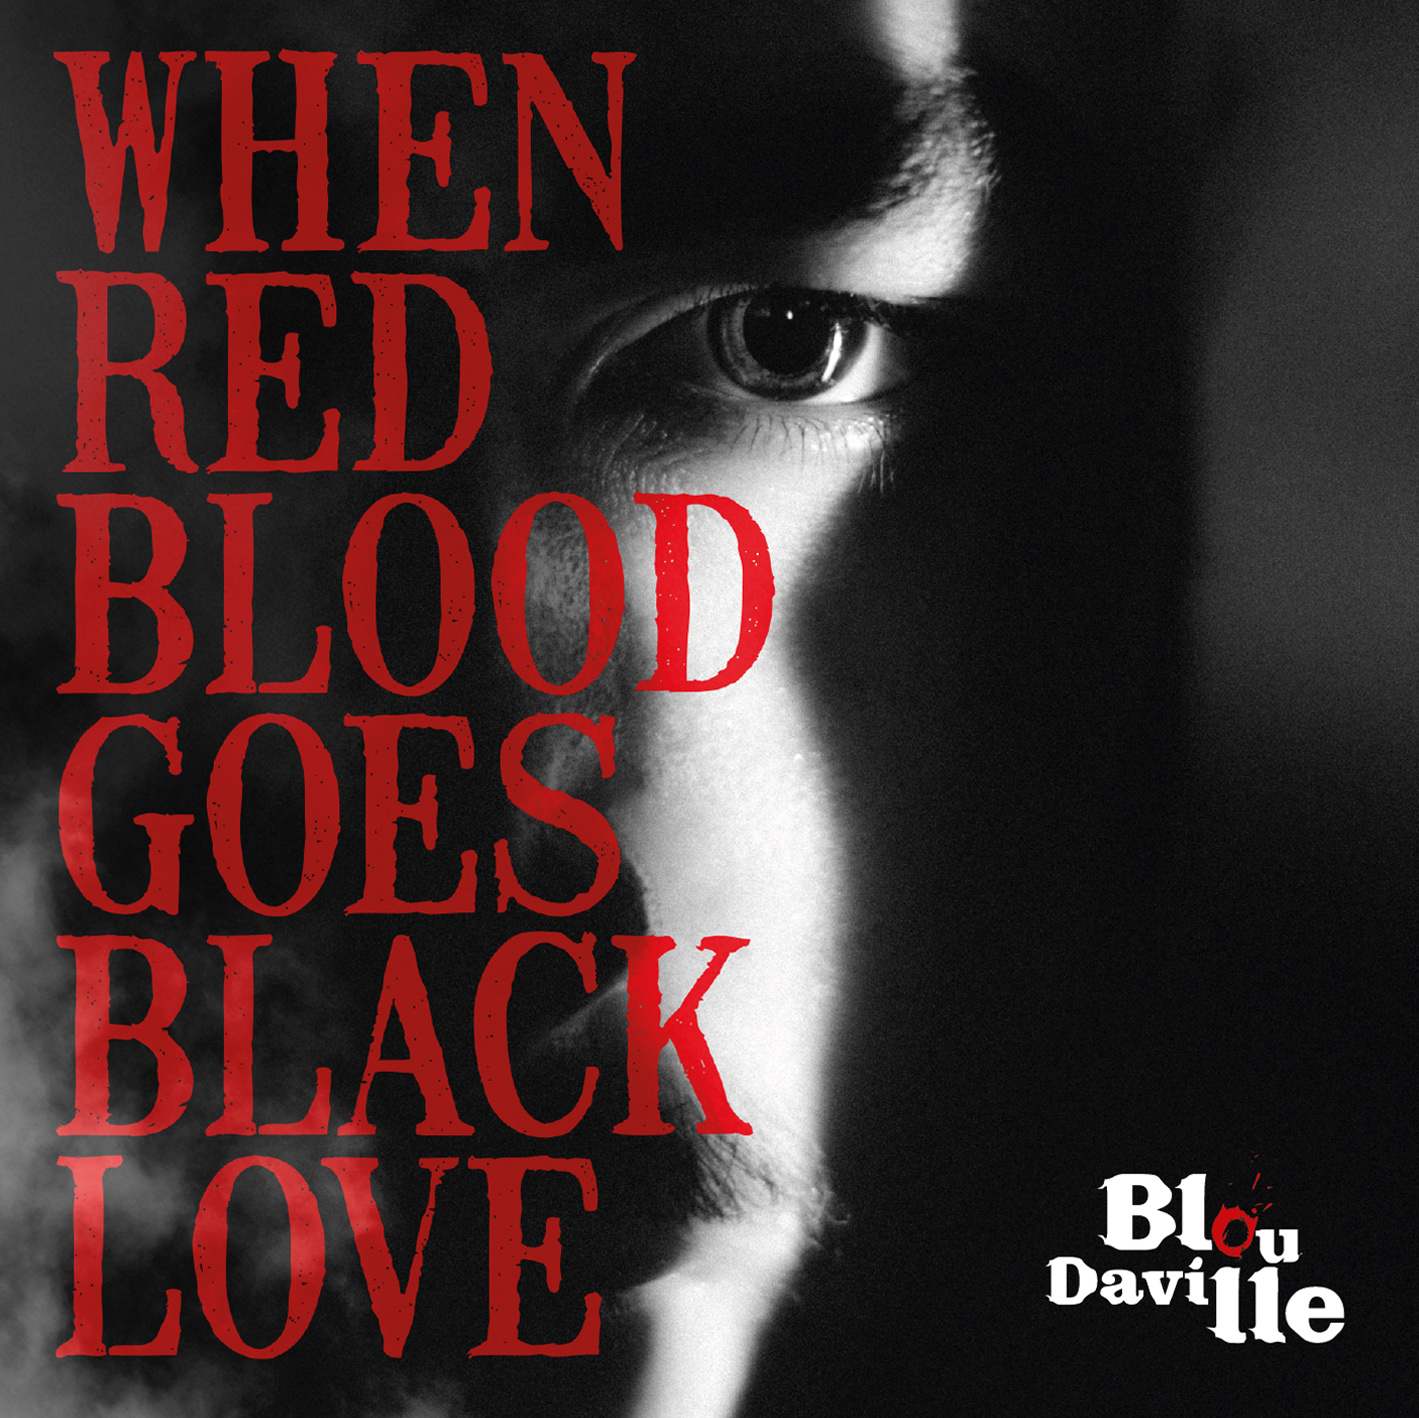 Il nuovo EP dei Blou Daville “When Red Blood Goes Black Love” è ora online!